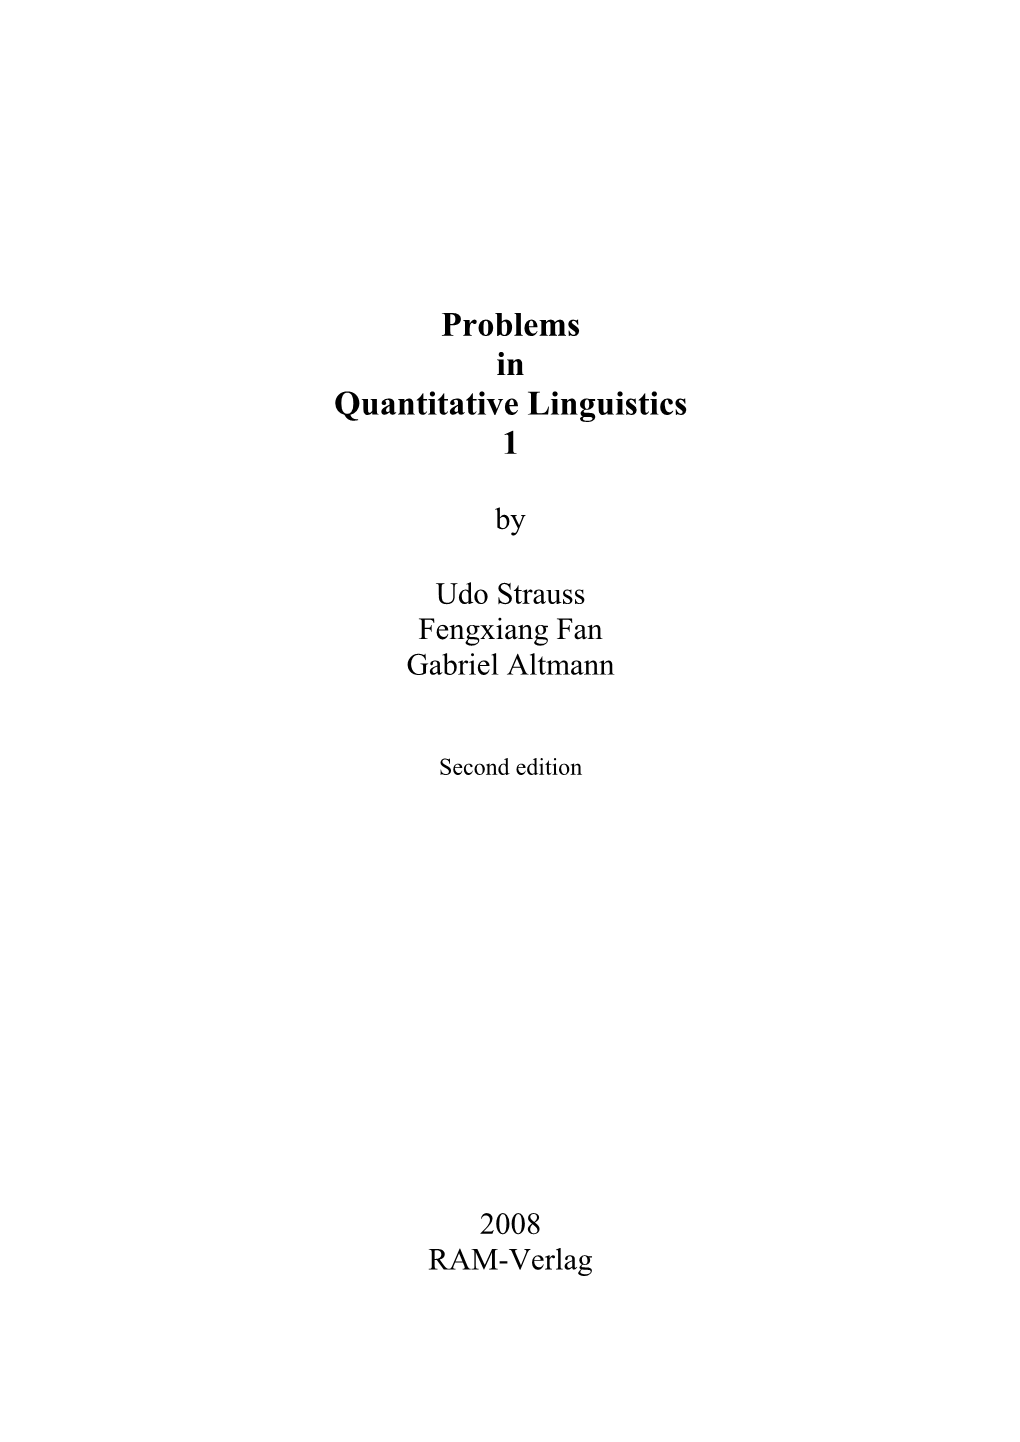 Problems in Quantitative Linguistics 1